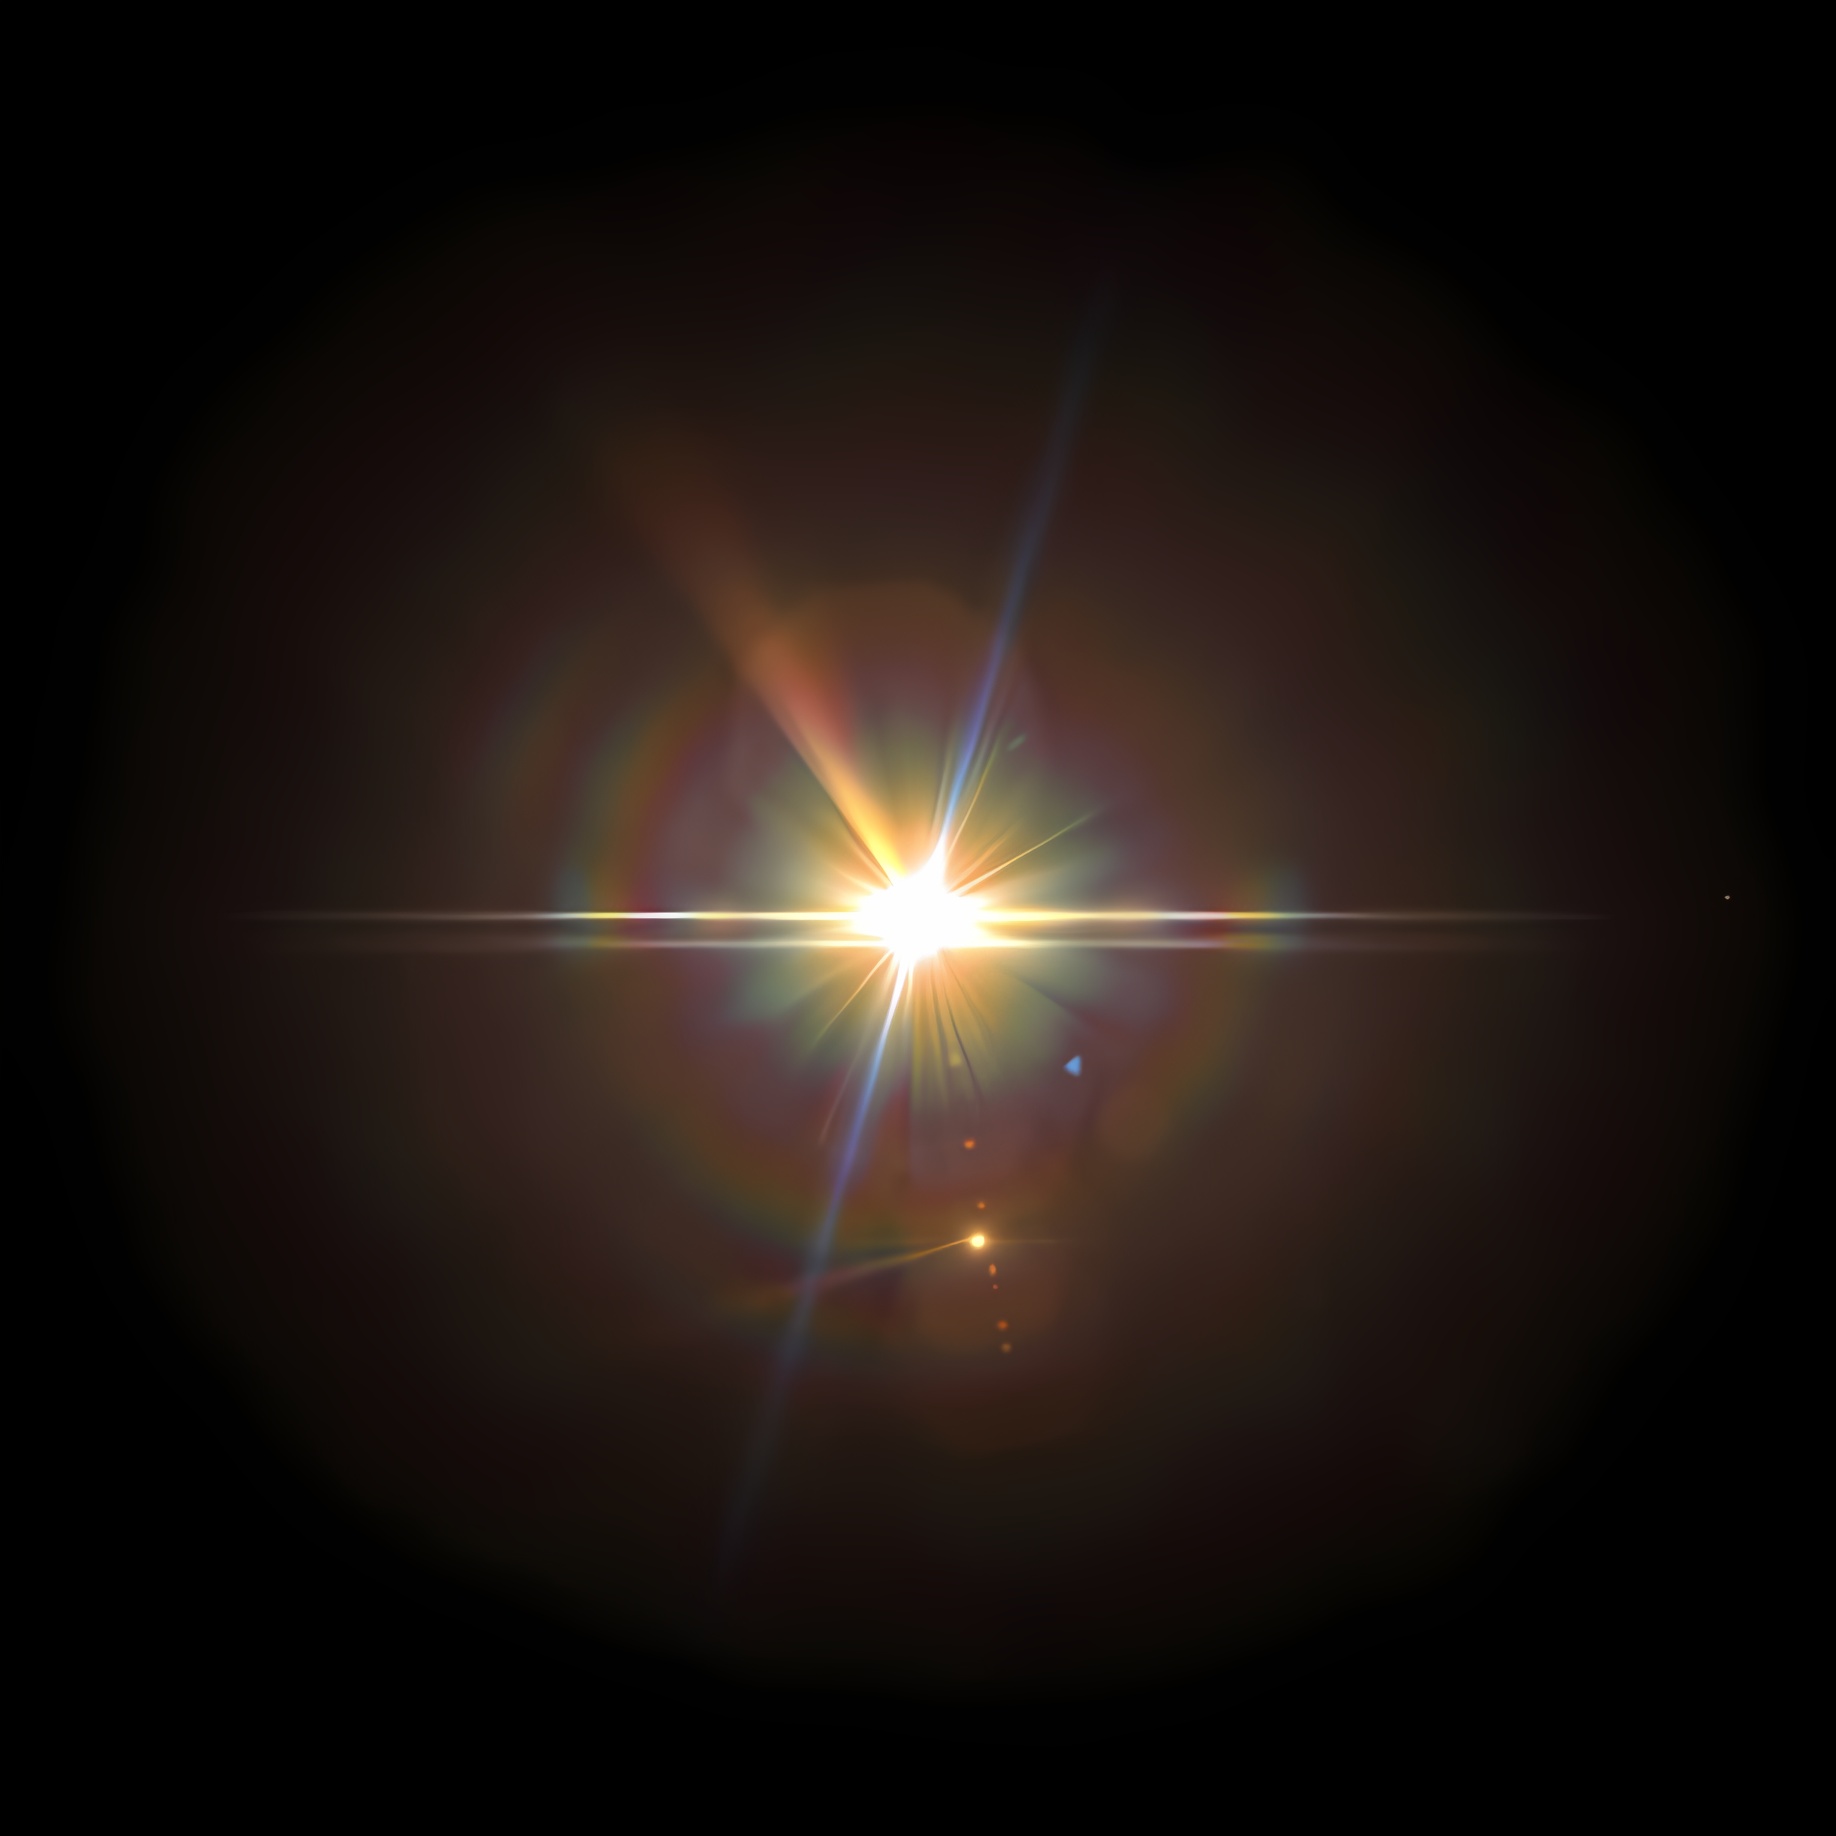 Какой слой солнца является основным источником видимого излучения?